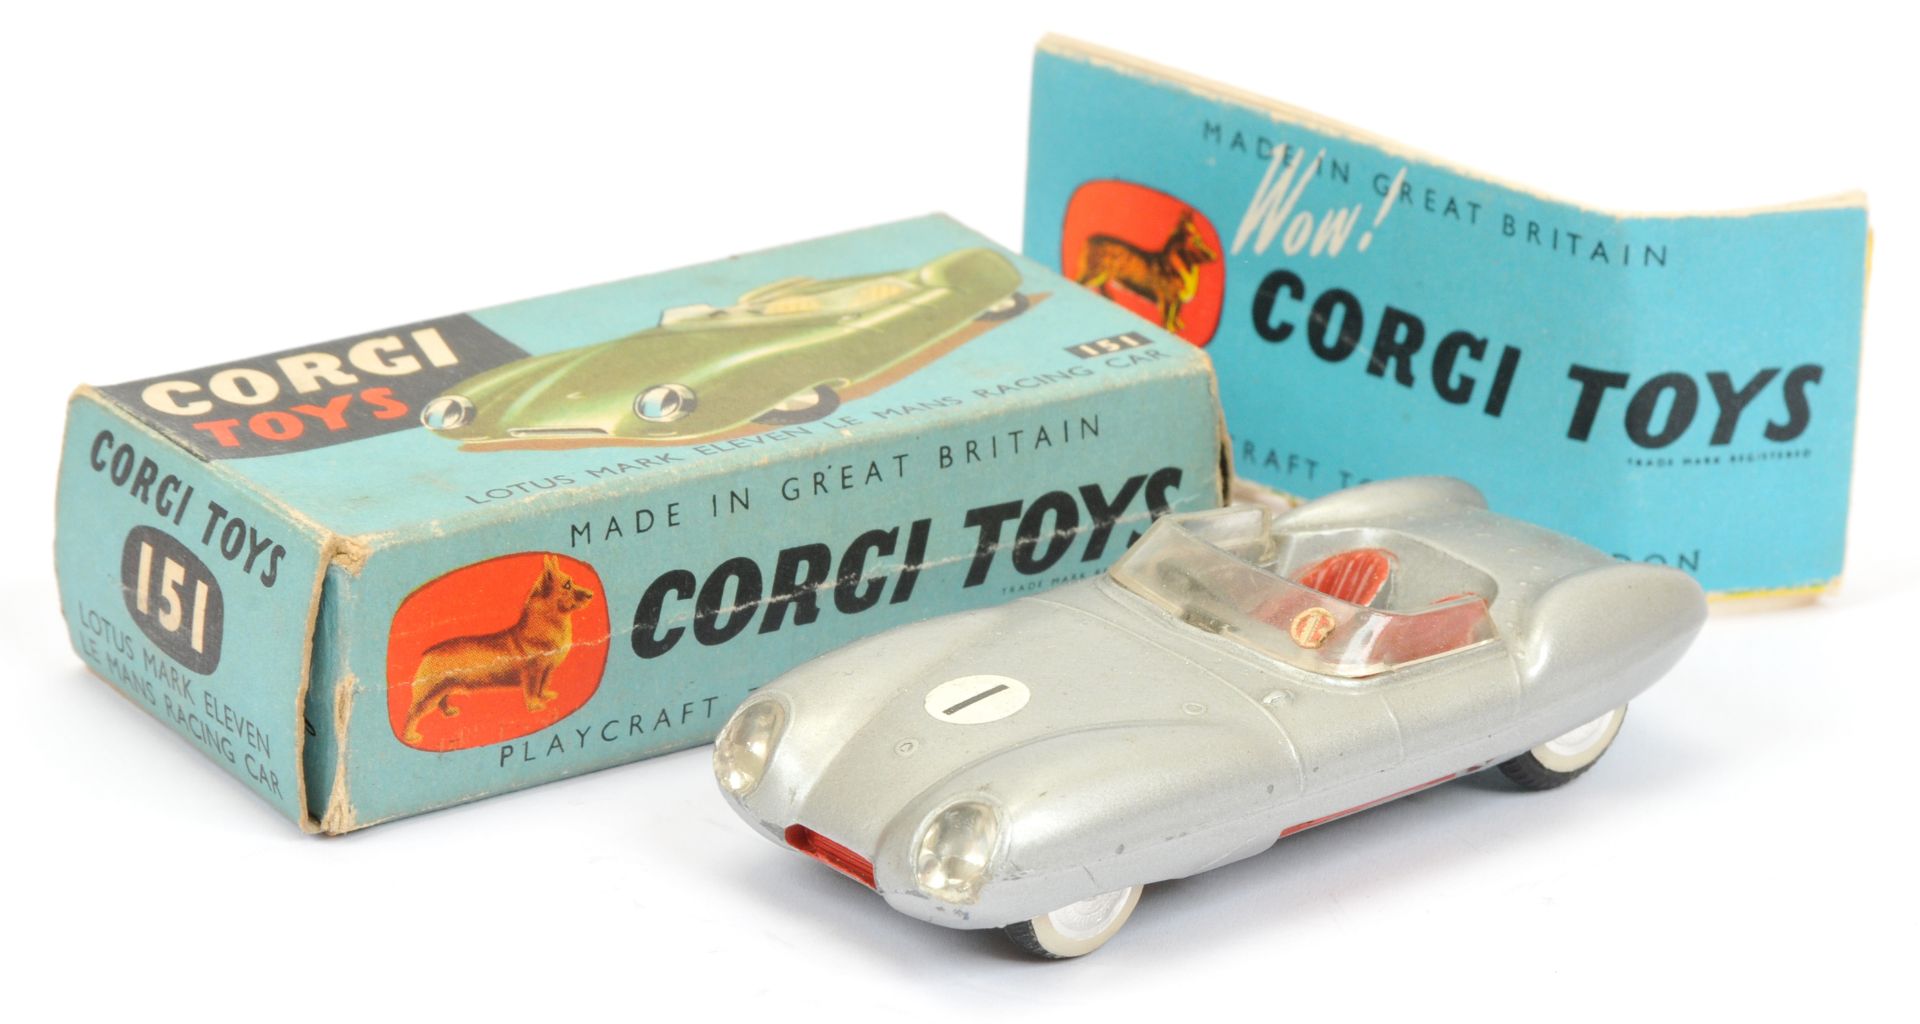 Corgi Toys 151 Lotus Mark 11 Le Mans Racing car - silver, red seats and trim, flat spun hubs